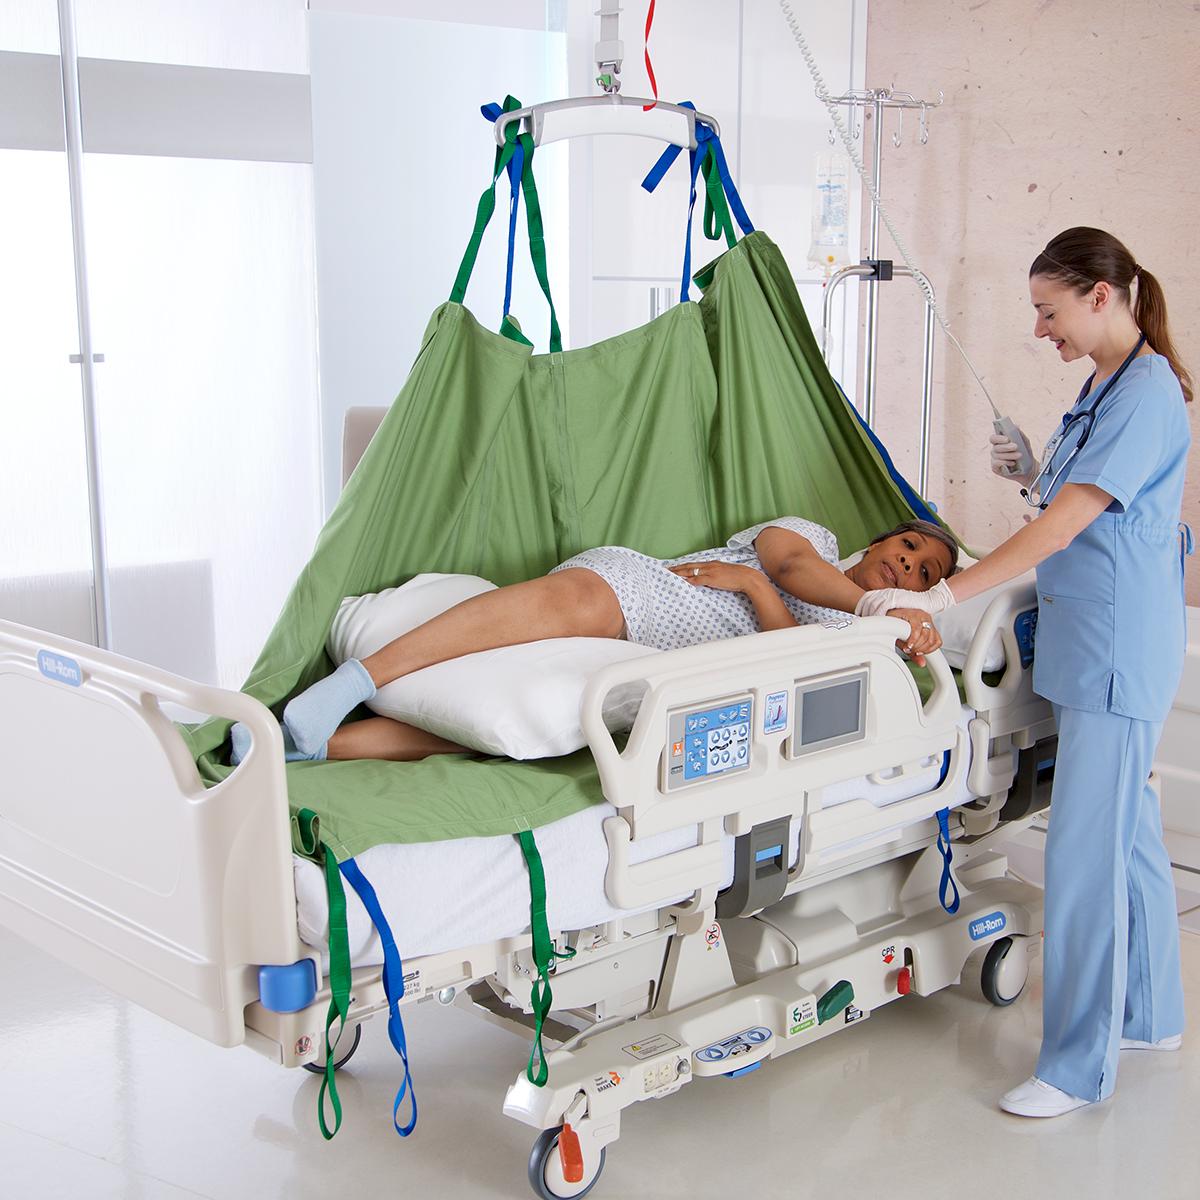 ผู้ดูแลใช้เครื่องยกเหนือศีรษะและ Repo Sheet ของ Hillrom เพื่อจัดเปลี่ยนท่าให้ผู้ป่วยที่นอนอยู่บนเตียง